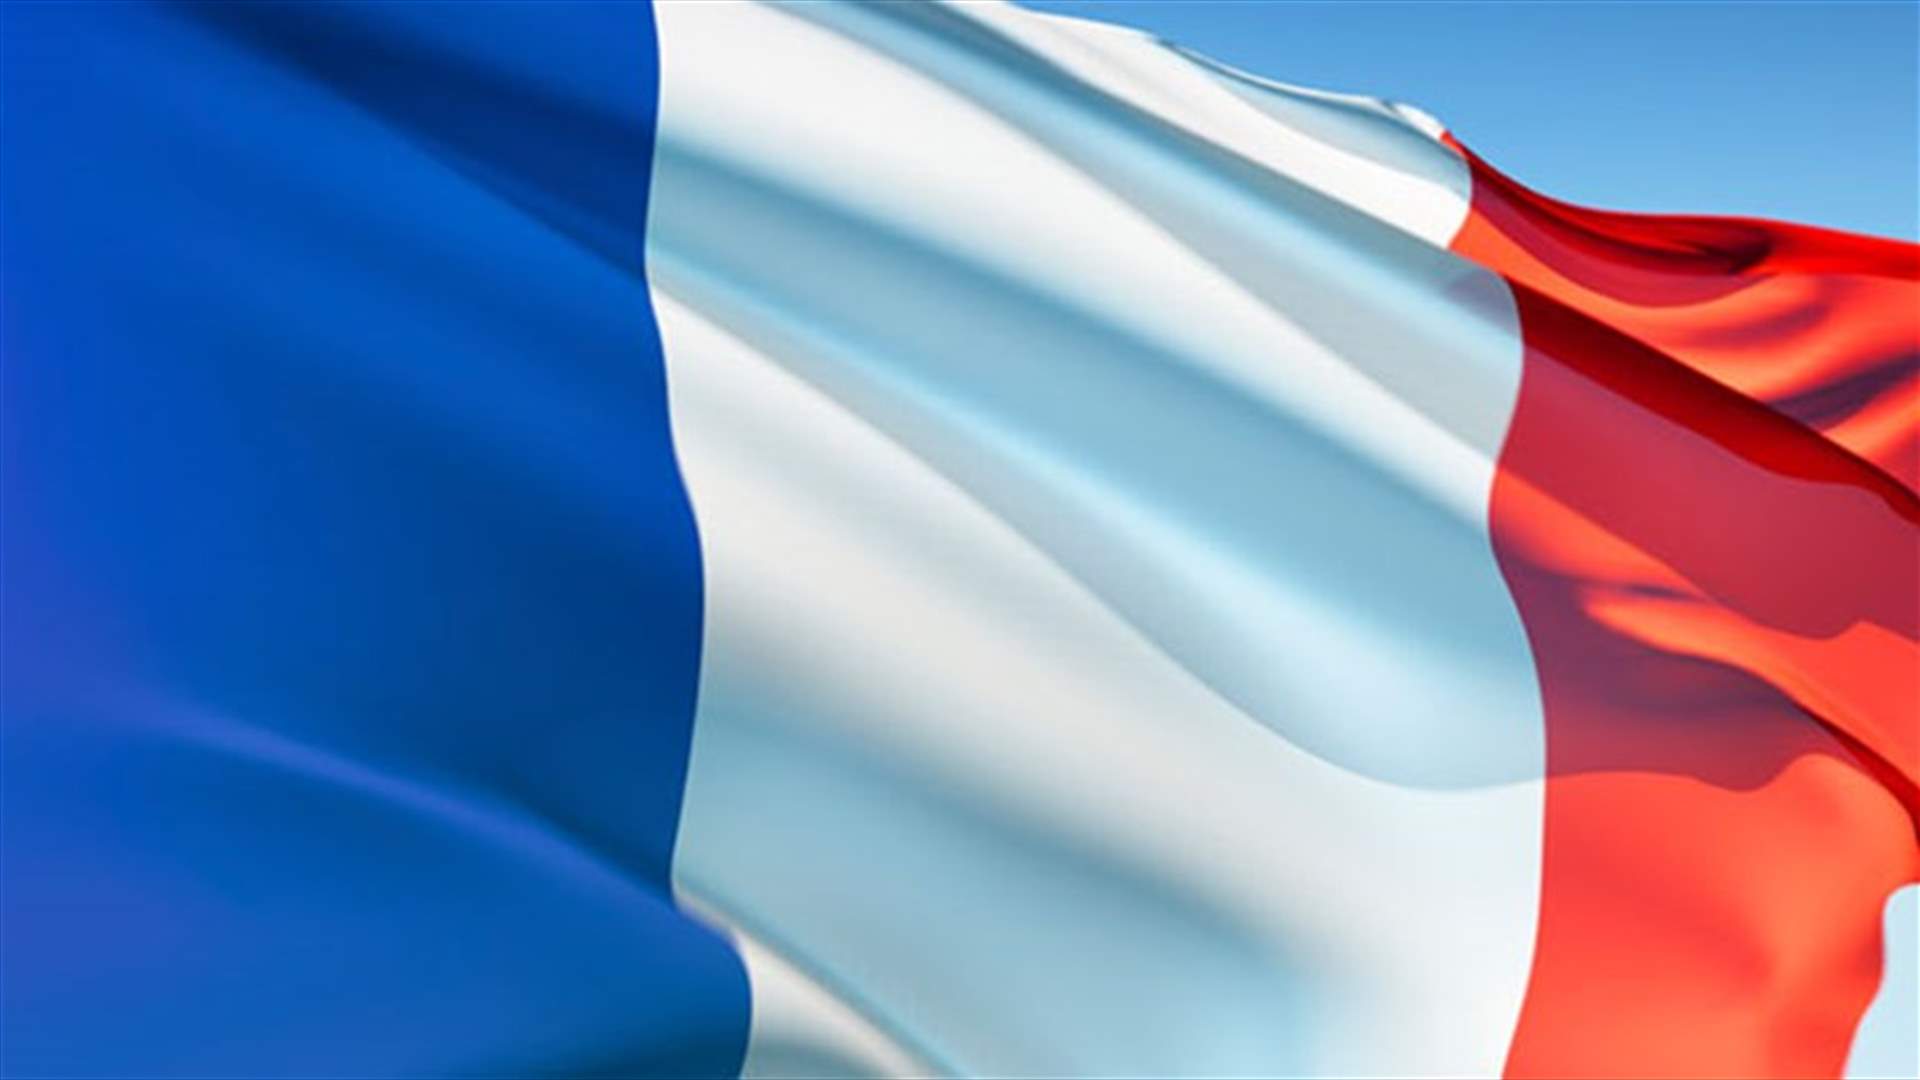  بلجيكا تسلم حمزة عطو المتهم في اعتداءات باريس الى فرنسا 